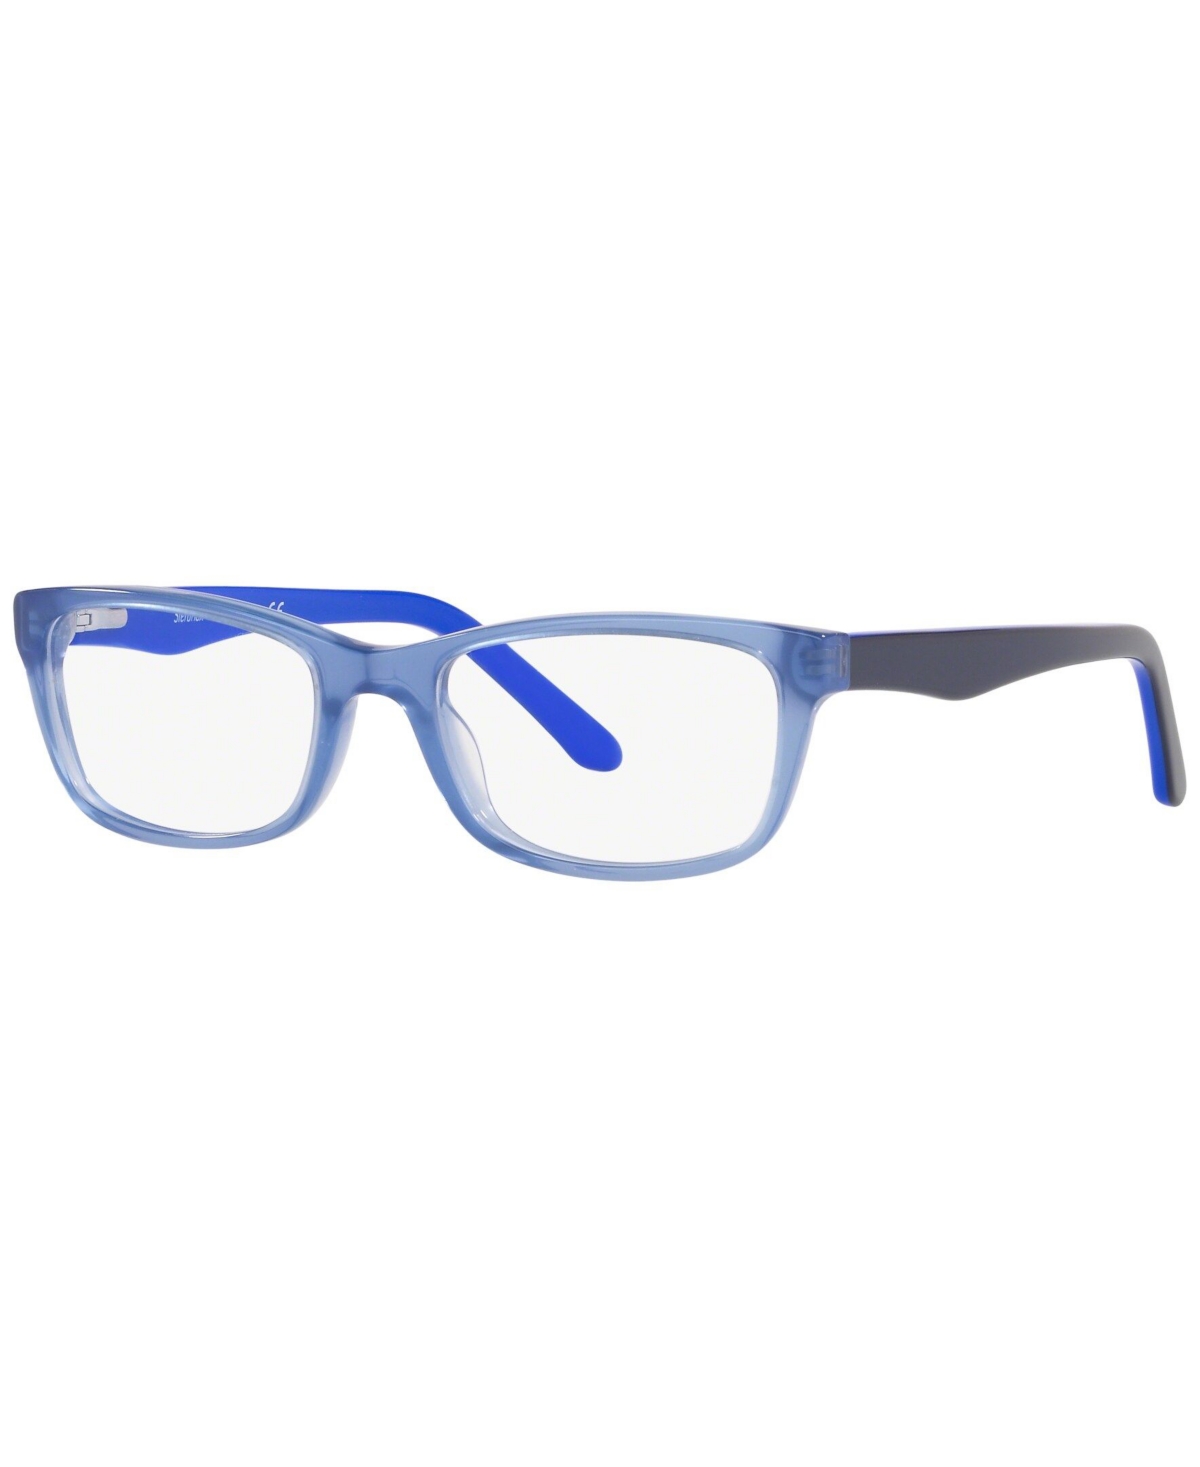 SF1845 Men's Square Eyeglasses - Gray